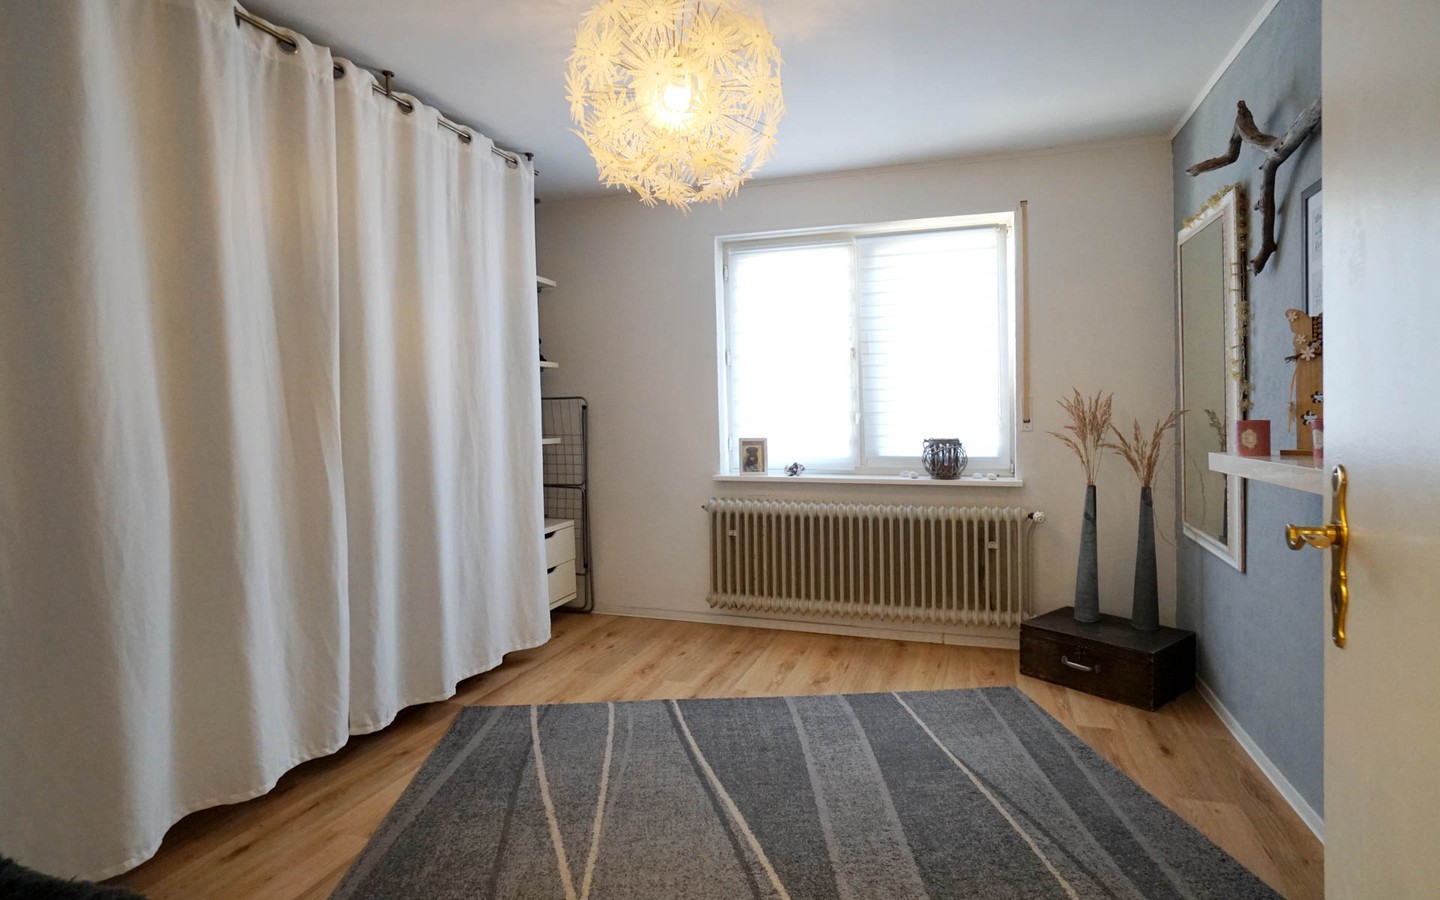 Zimmer Wohnung Hinterhaus - Speyer: Wohn- und Geschäftshaus in Zentrumslage als exzellente Kapitalanlage und / oder Eigennutzung